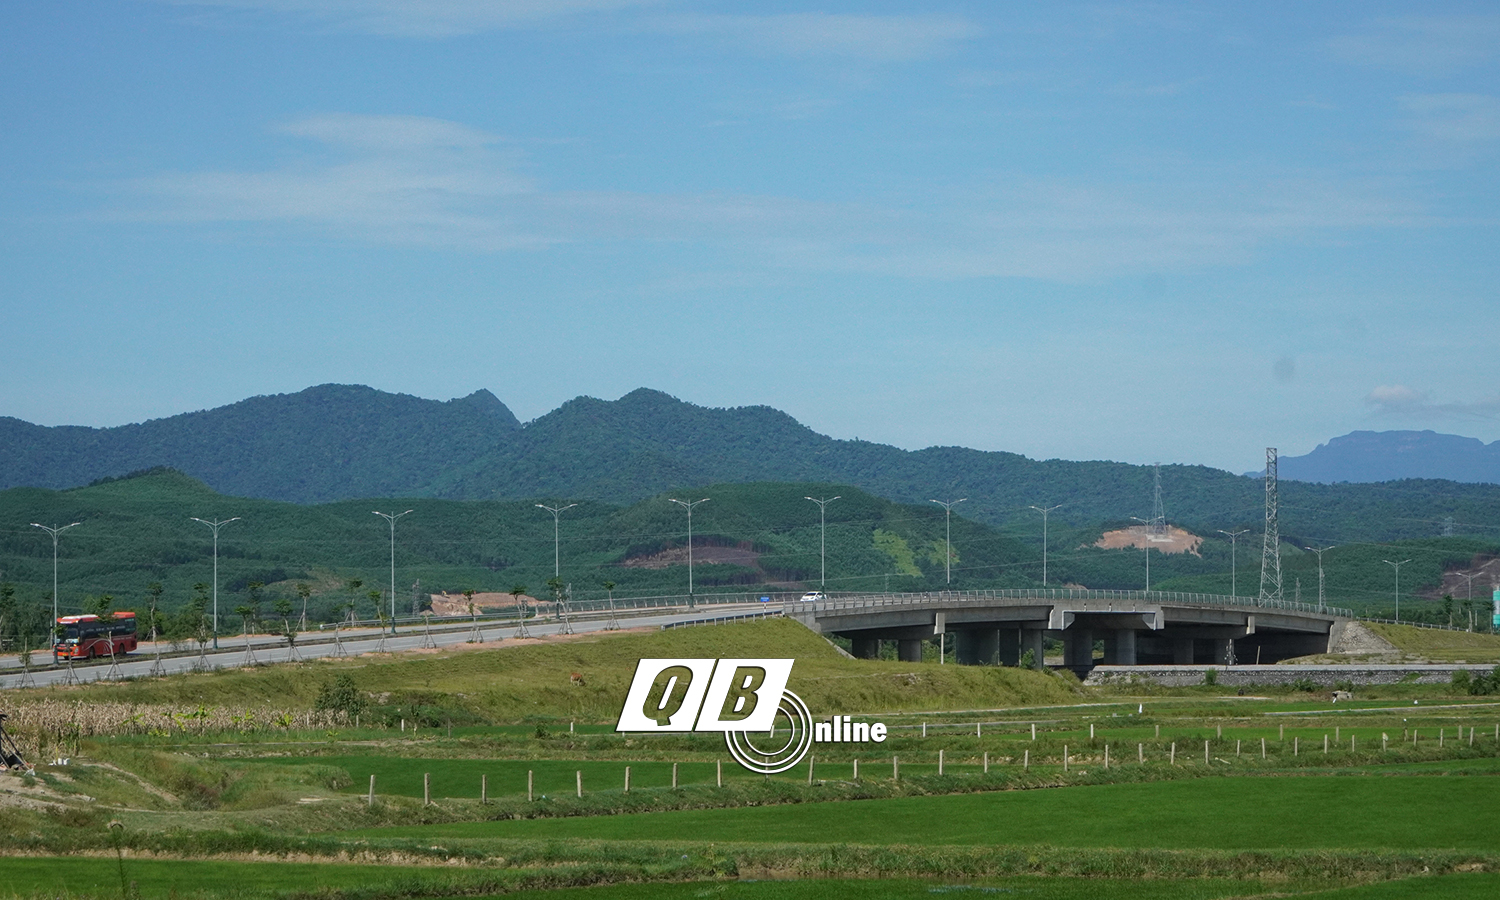 Cầu vượt đường sắt trên tuyến đường từ cầu Nhật Lệ 2 đến đường Hồ Chí Minh nhánh Đông, sử dụng vốn đầu tư công, góp phần xây dựng kết cấu hạ tầng theo hướng đồng bộ, từng bước hiện đại. 